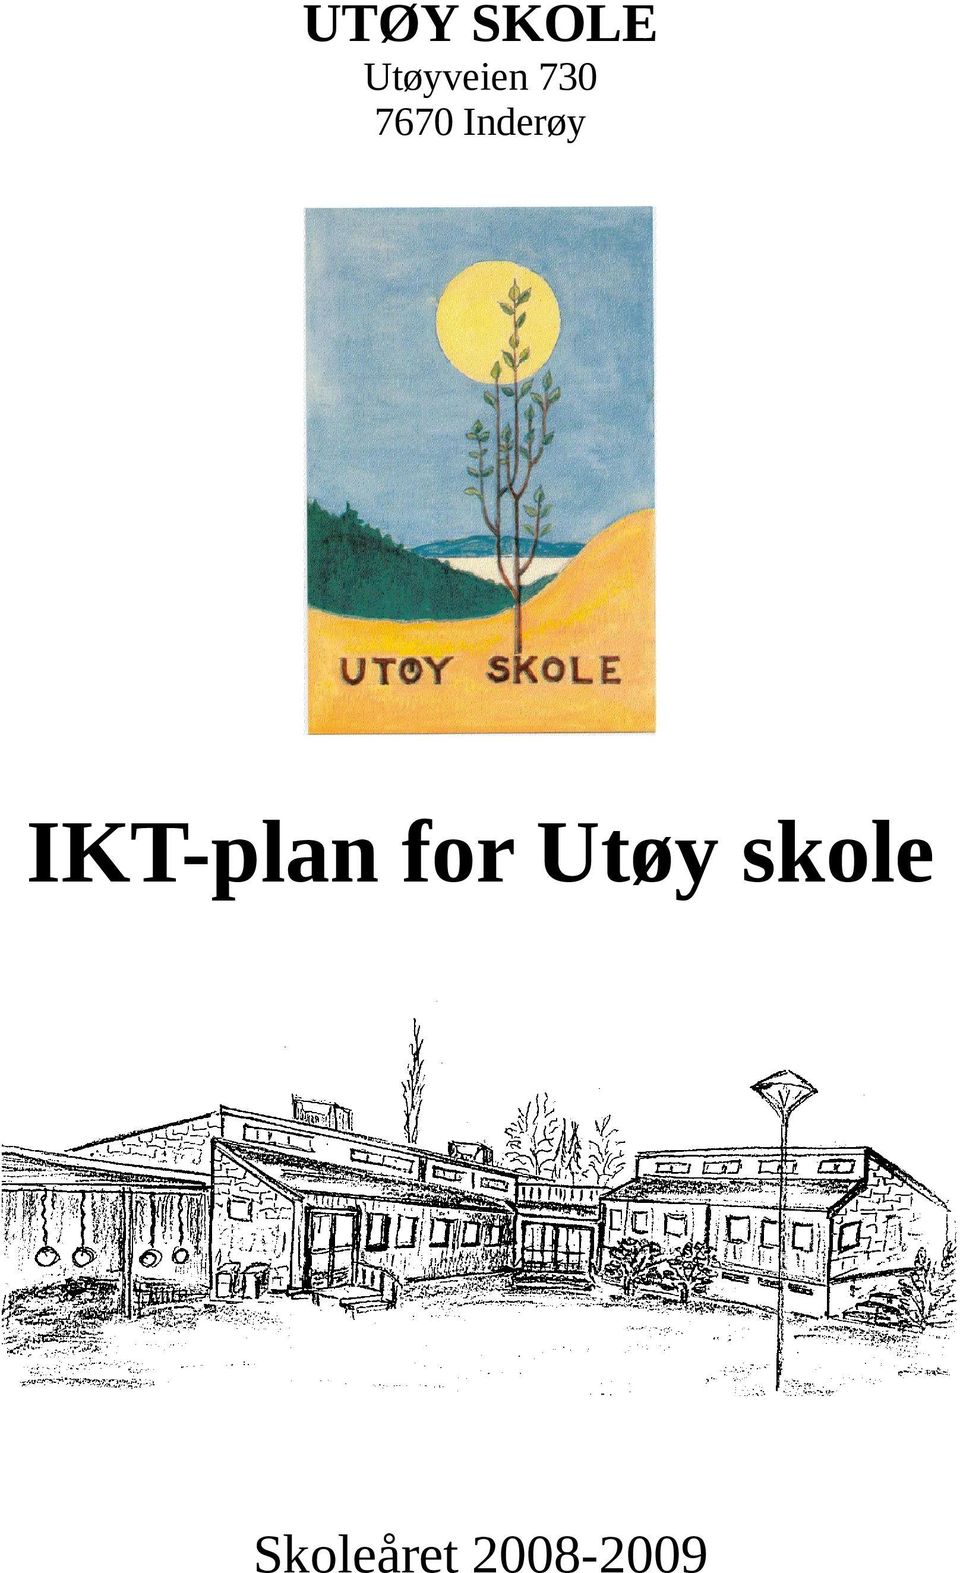 IKT-plan for Utøy